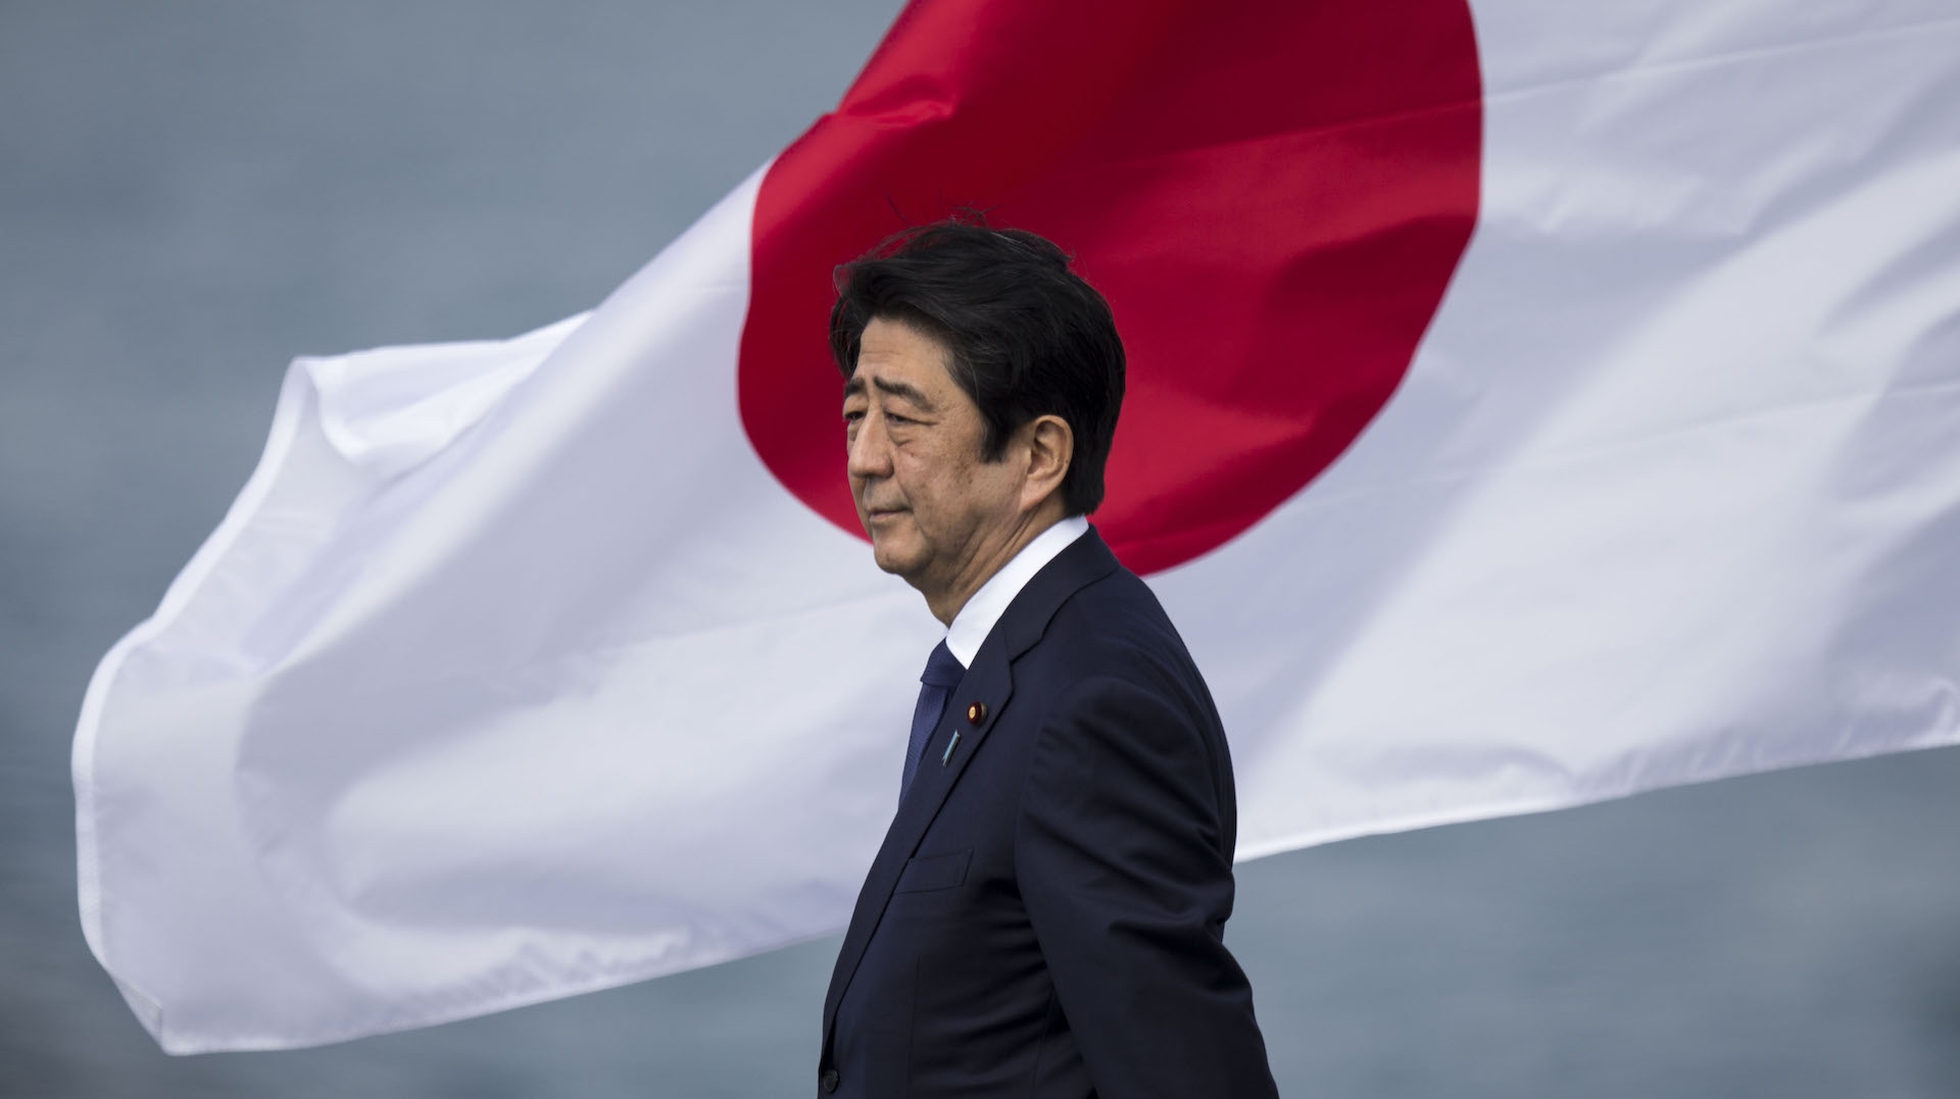 Tiểu sử ông Abe Shinzo - Thủ tướng Nhật Bản tại vị lâu nhất từ trước đến nay - Ảnh 2.